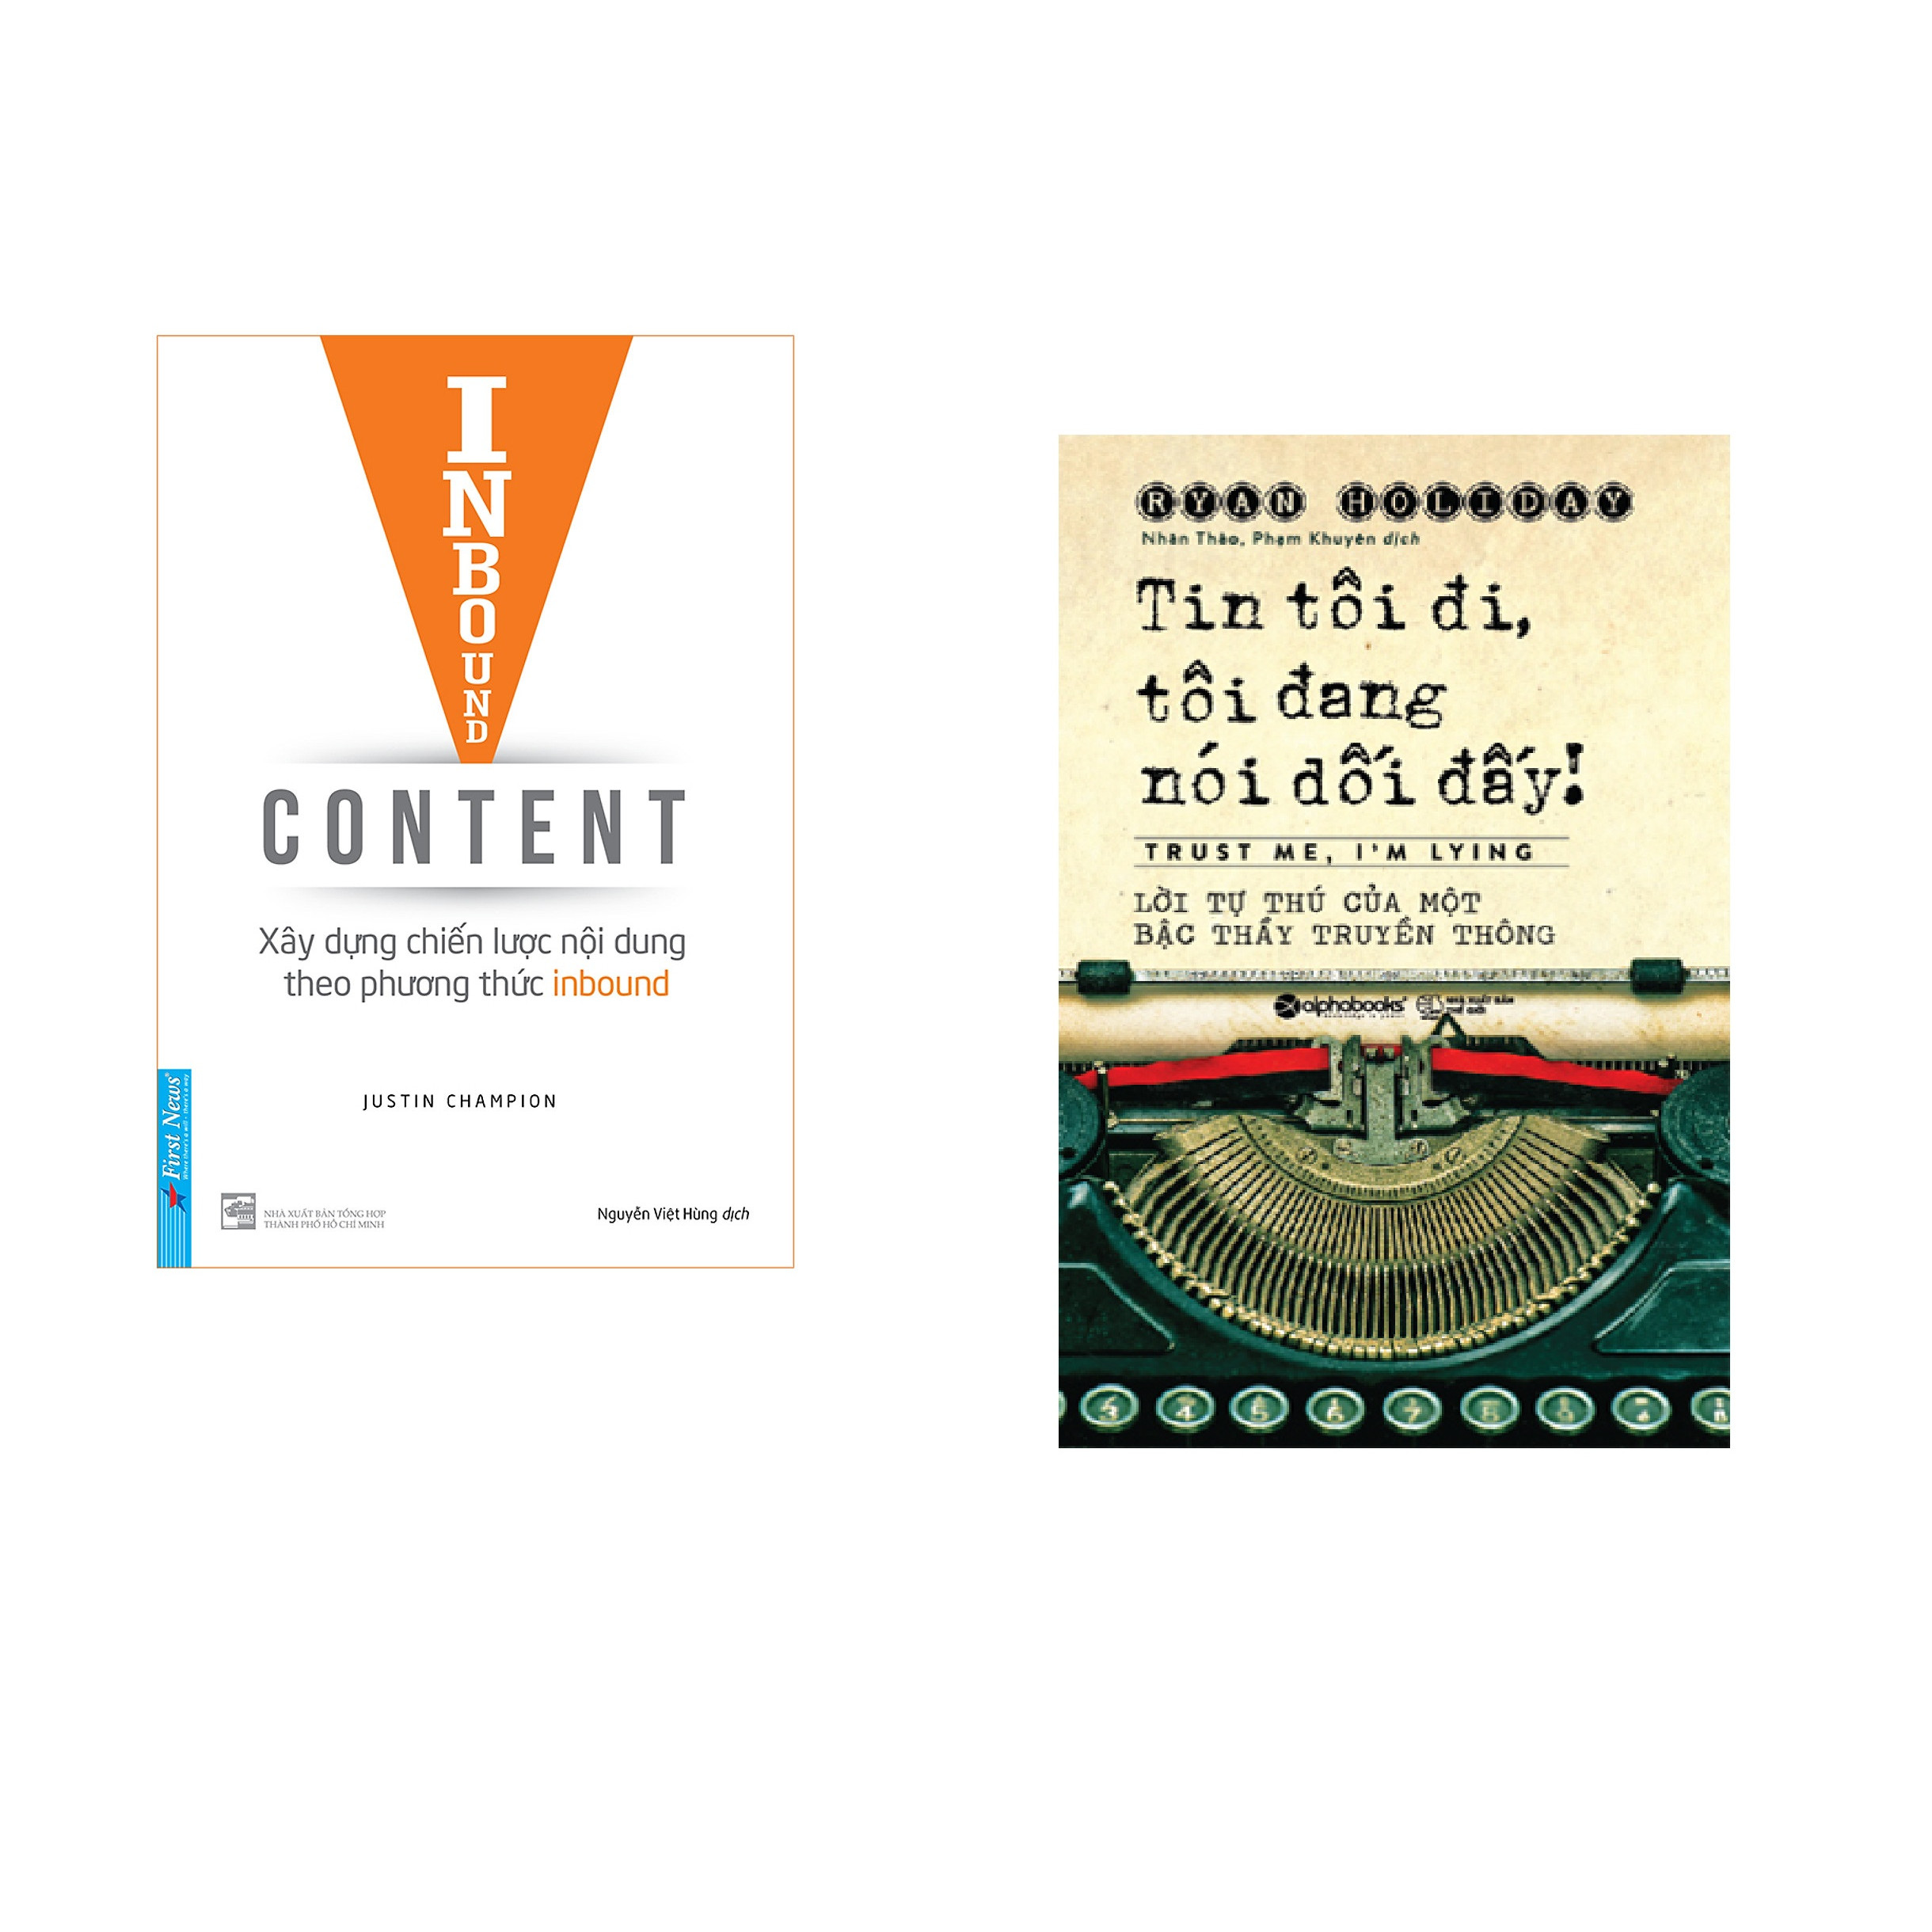 Combo 2 cuốn sách: Inbound Content - Xây Dựng Chiến Lược Nội Dung Theo Phương Thức Inbound + Tin Tôi Đi, Tôi Đang Nói Dối Đó